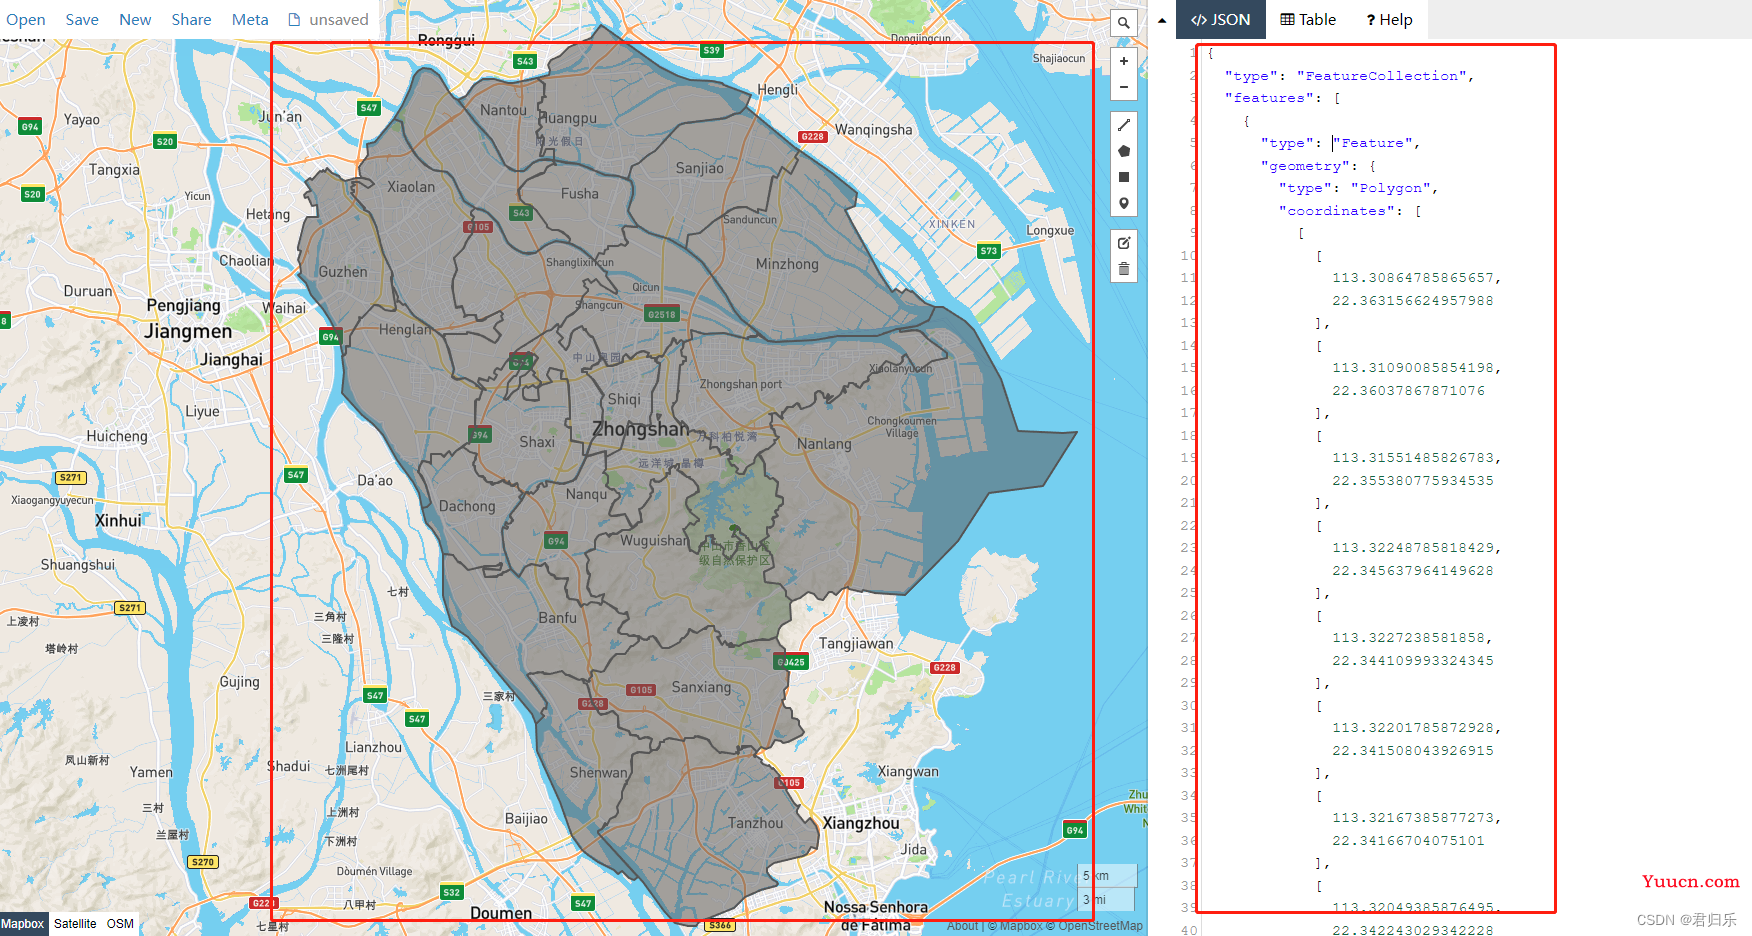 获取街道、镇级的地图geoJson数据方法，使用echarts绘制出街道、镇级的地图区域画面（中山市为例）